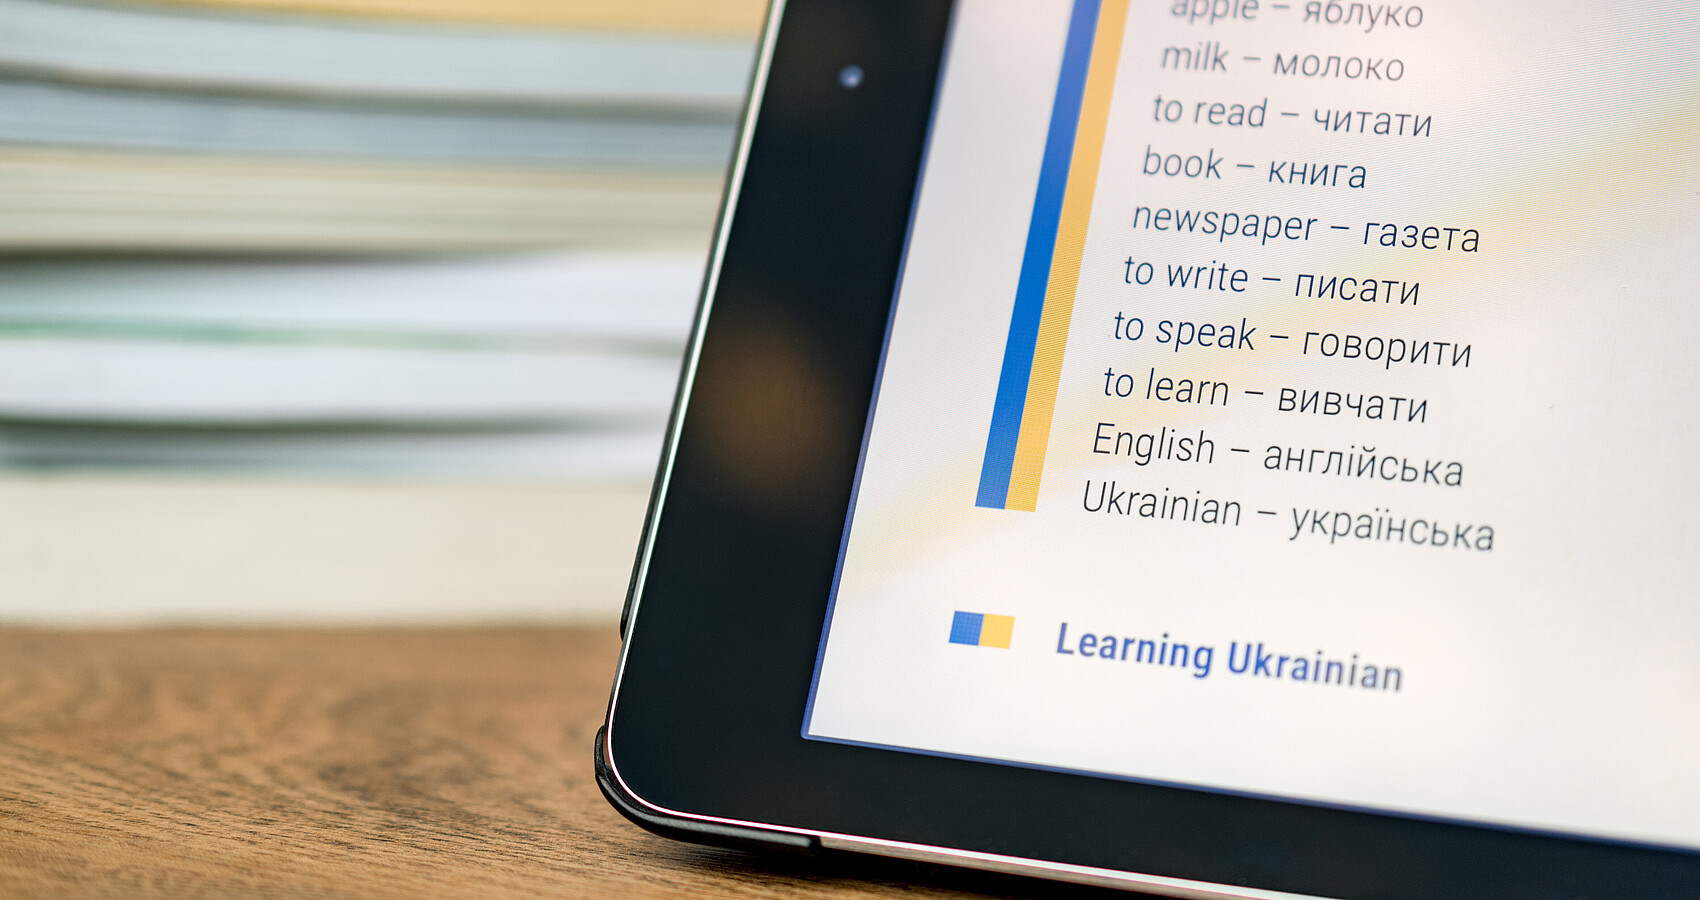 Eine Ecke eines Sprachcomputers wird im rechten Bildrand gezeigt. Darin sind englisch-ukrainische Vokabeln zu lesen. Im Hintergrund liegen Bücher aufgestapelt.